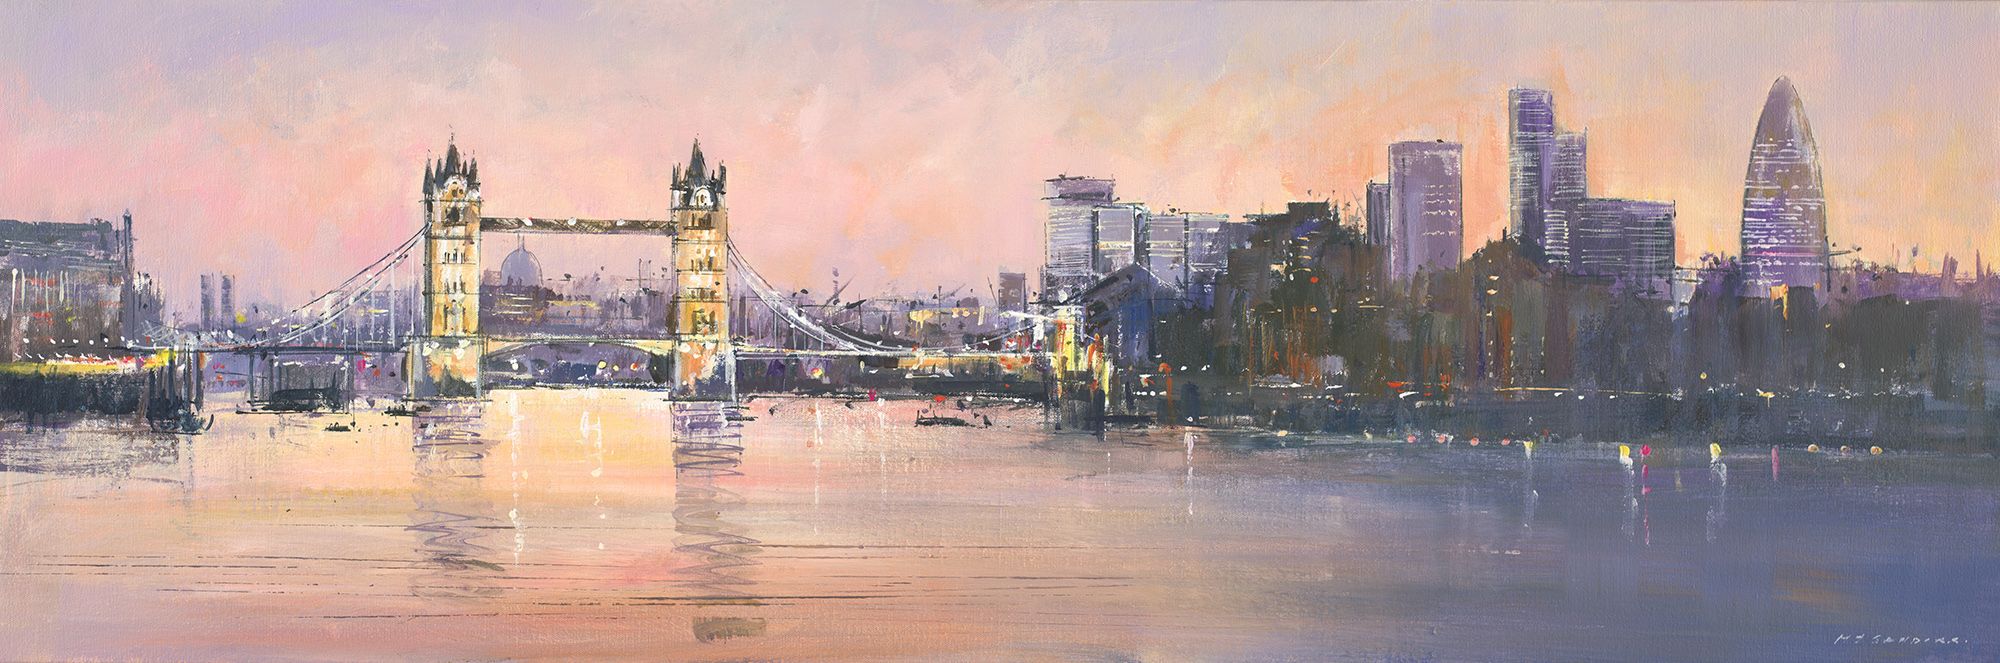 Tower Bridge and Gherkin, London by Michael Sanders